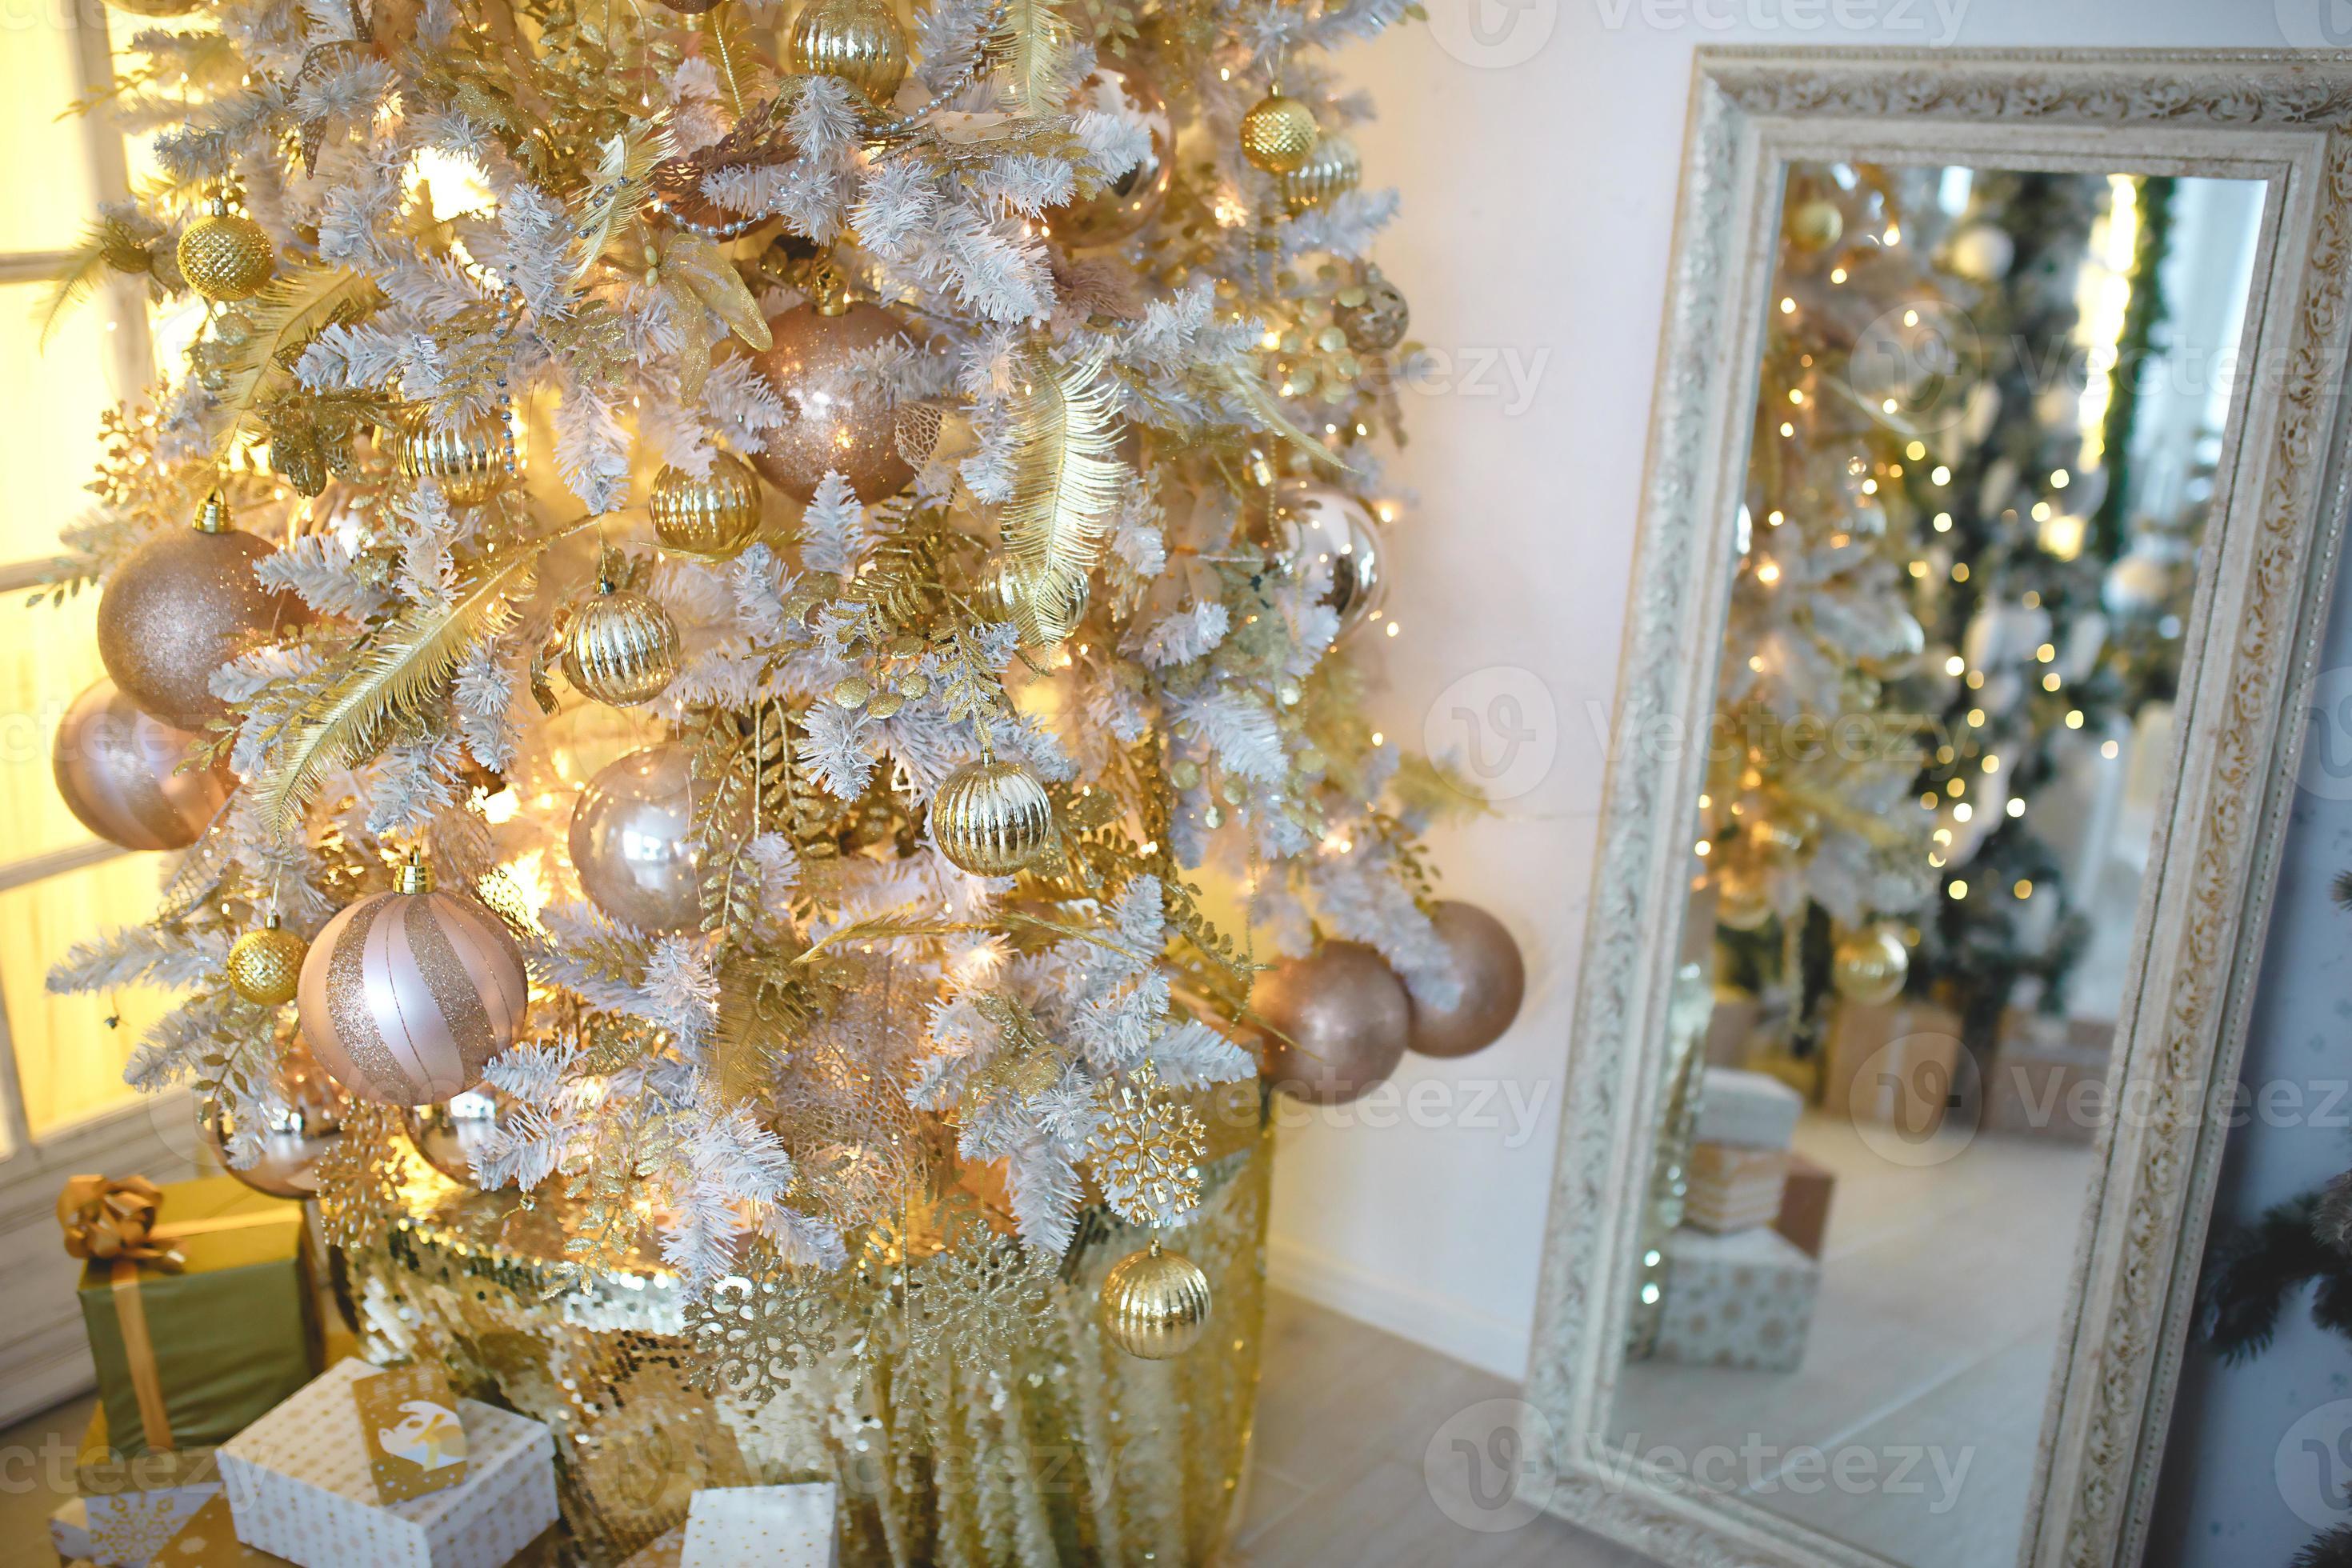 Sala de estar de natal branca e dourada com árvore de natal e